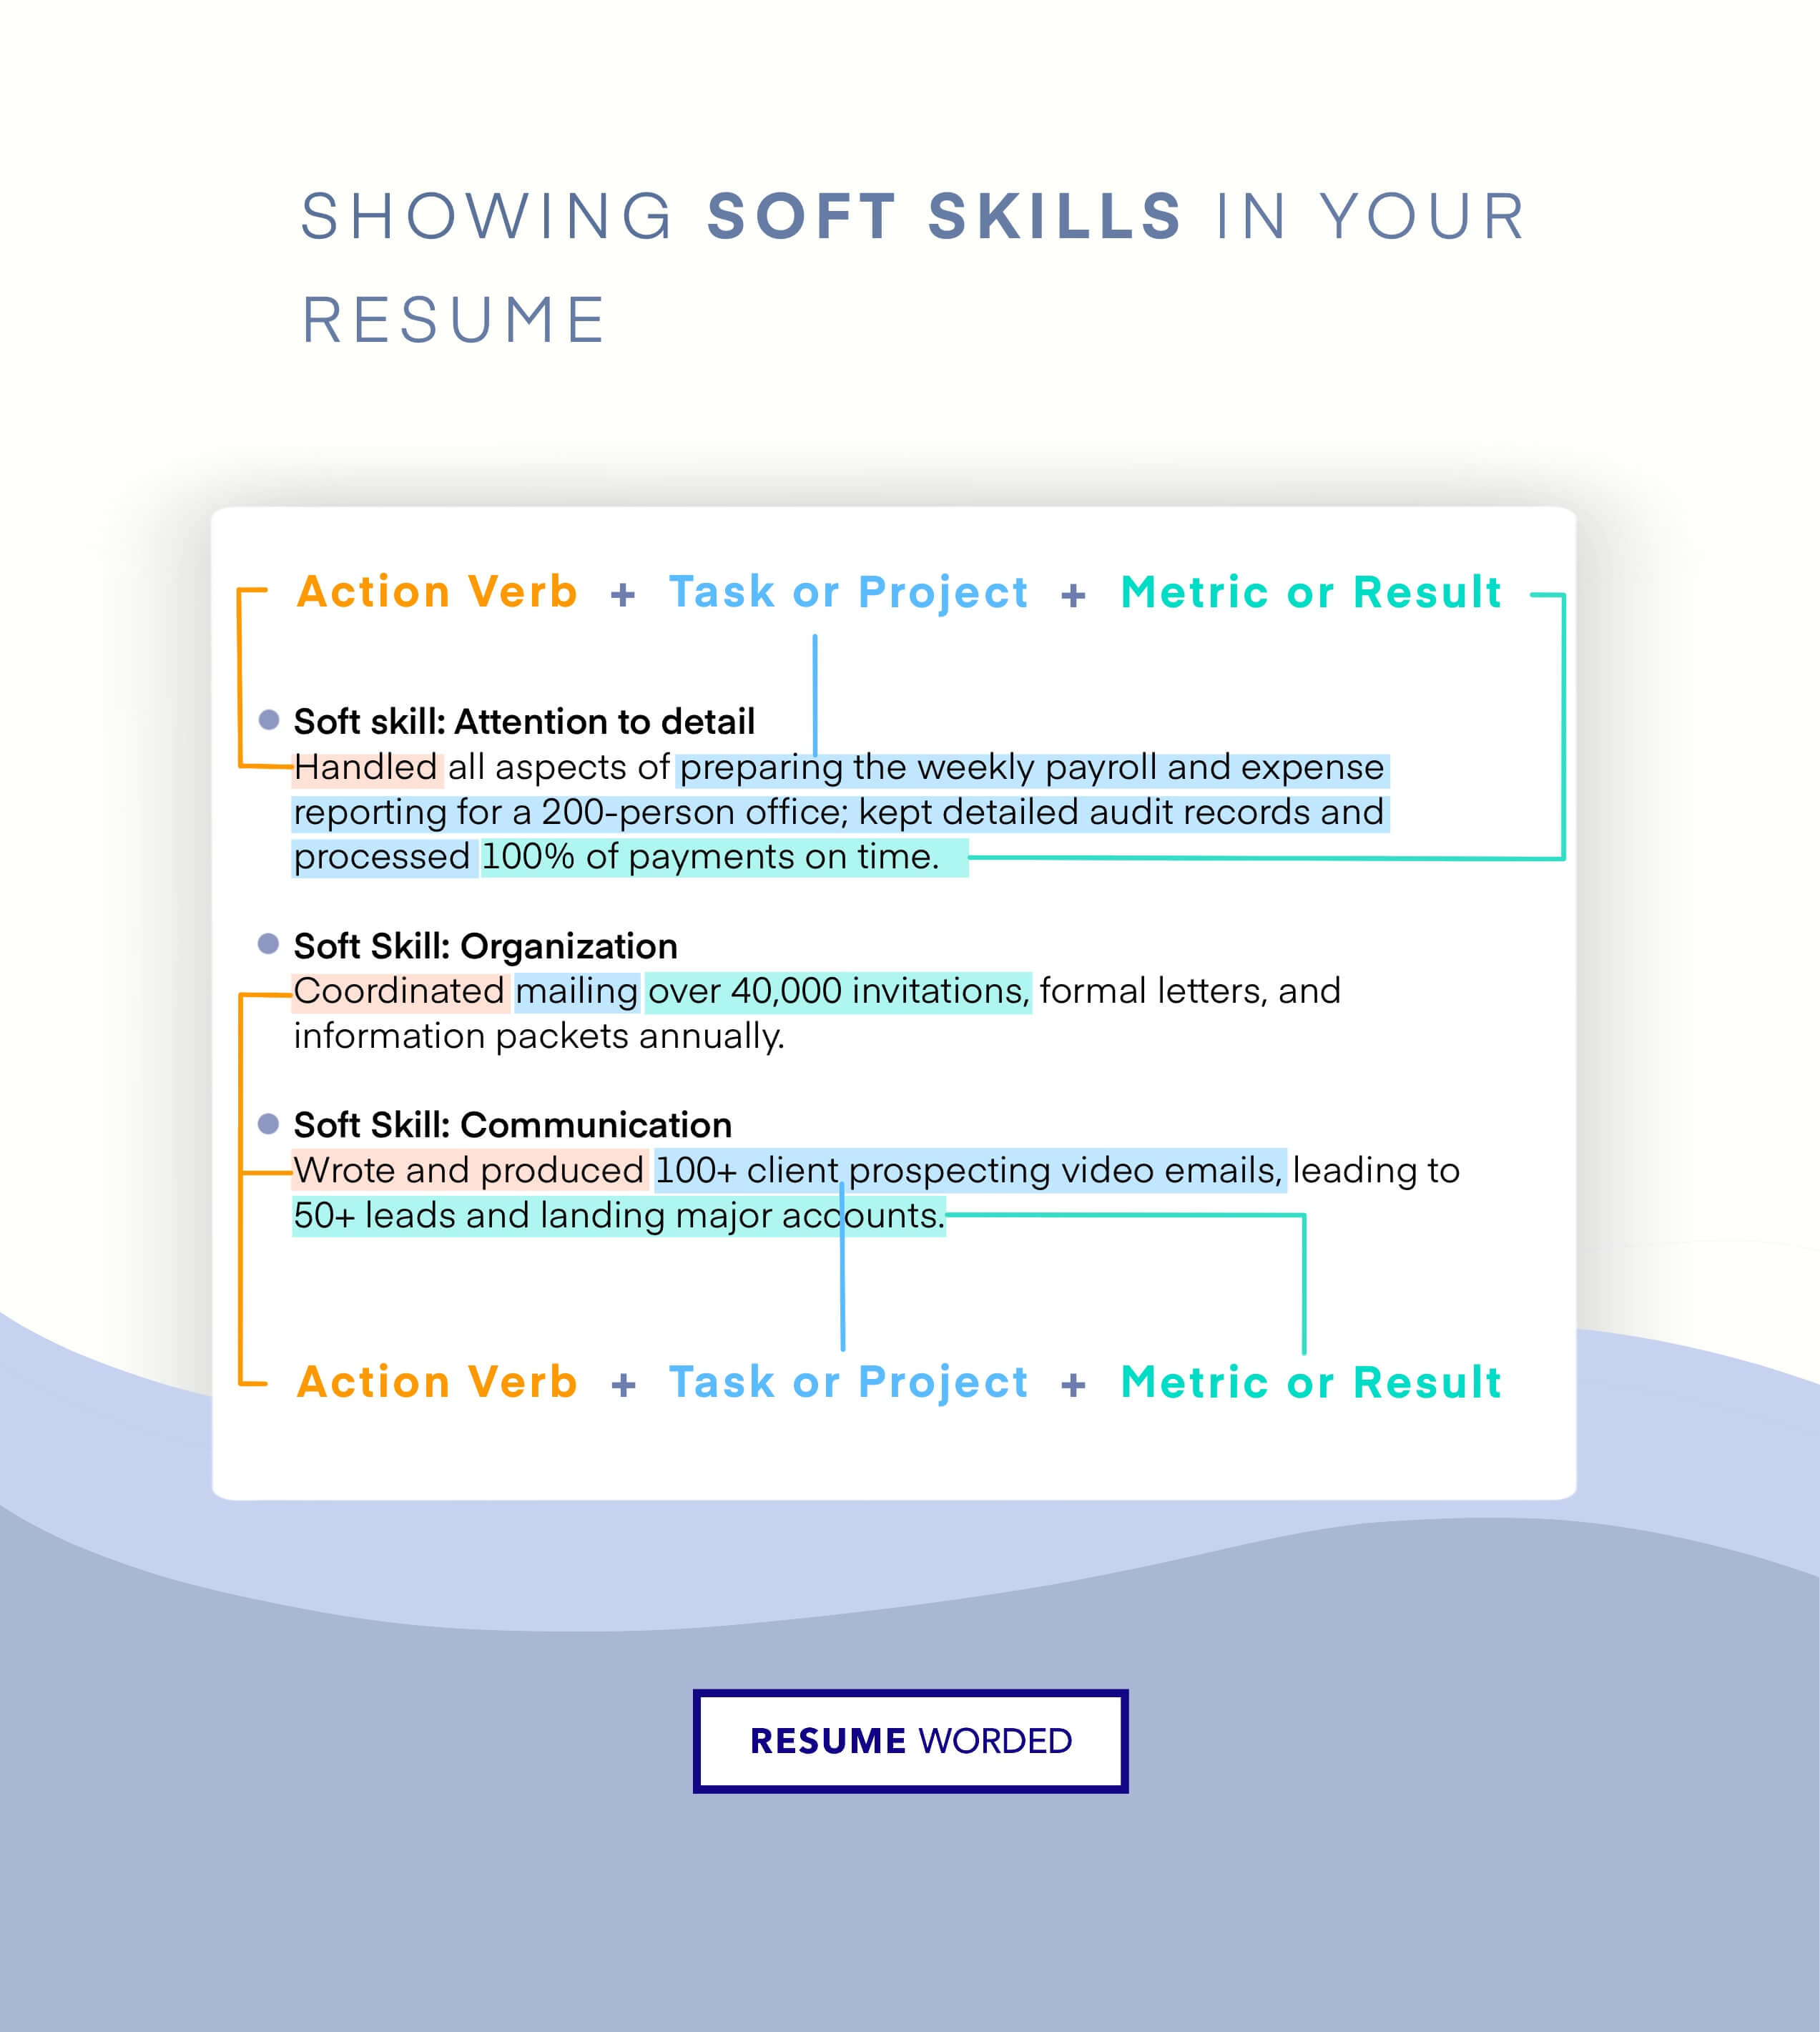 Showcase Your Soft Skills - Senior Business Analyst CV